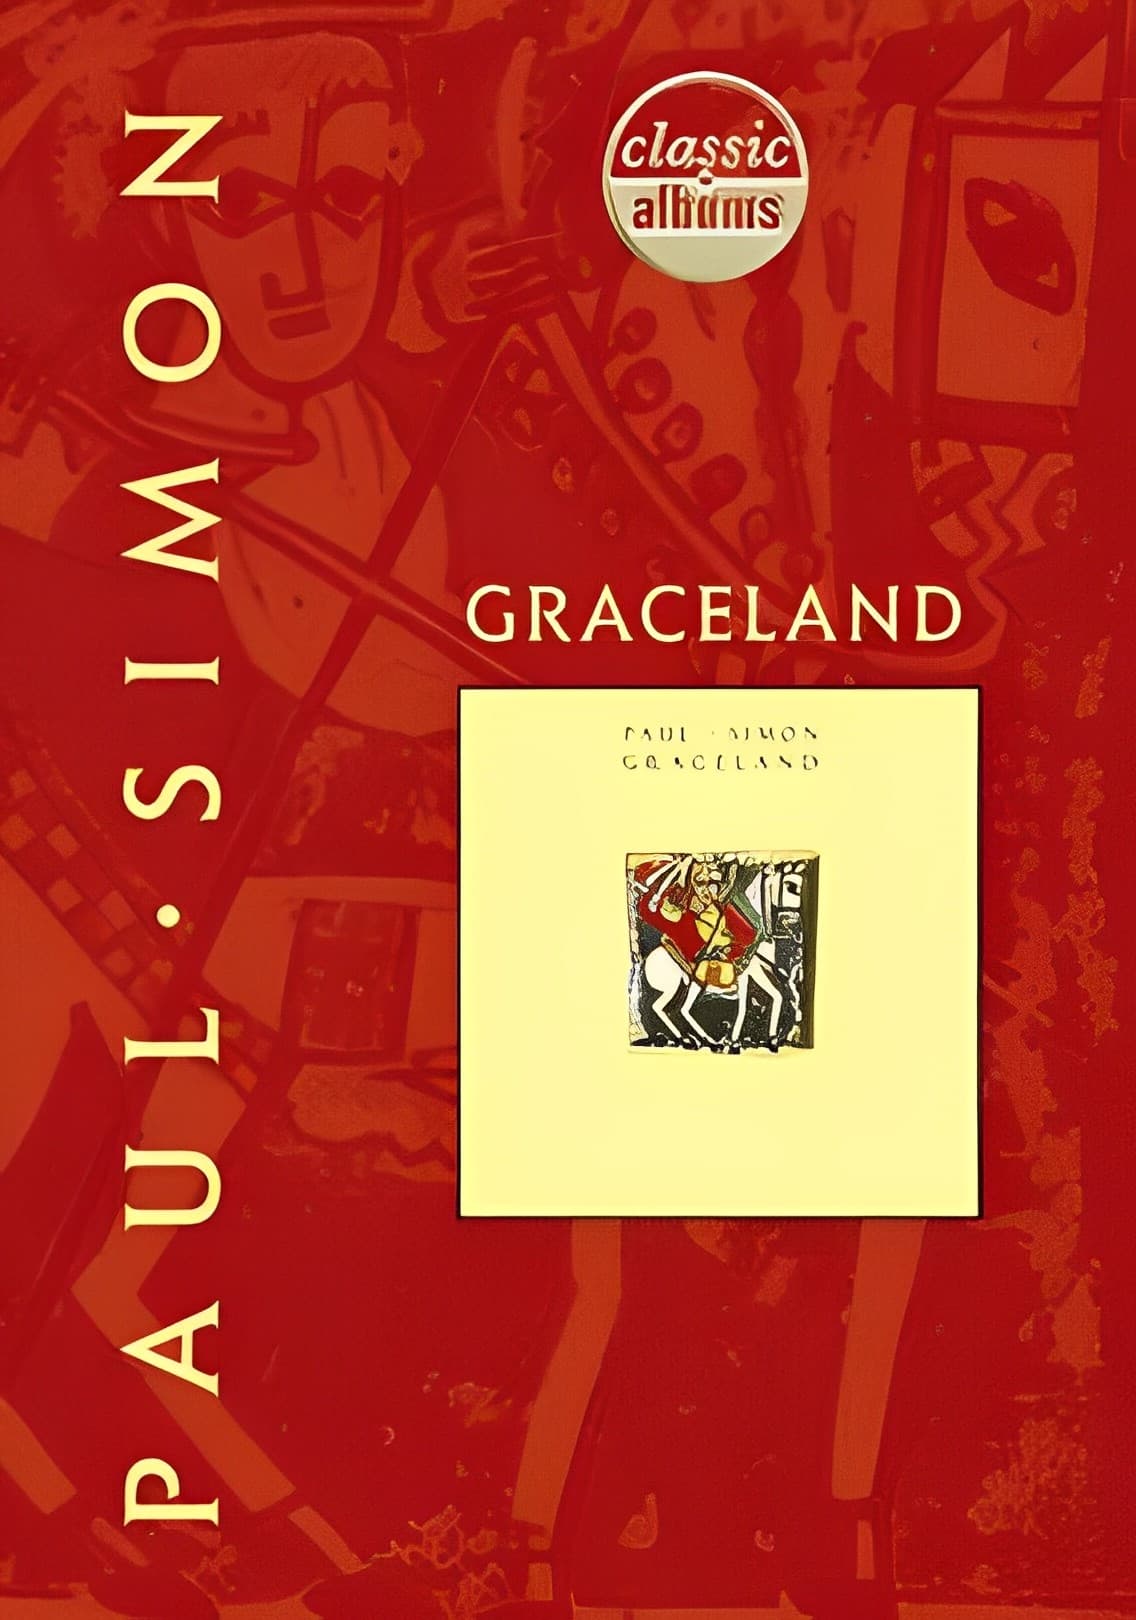 Classic Albums: Paul Simon - Graceland (1997)